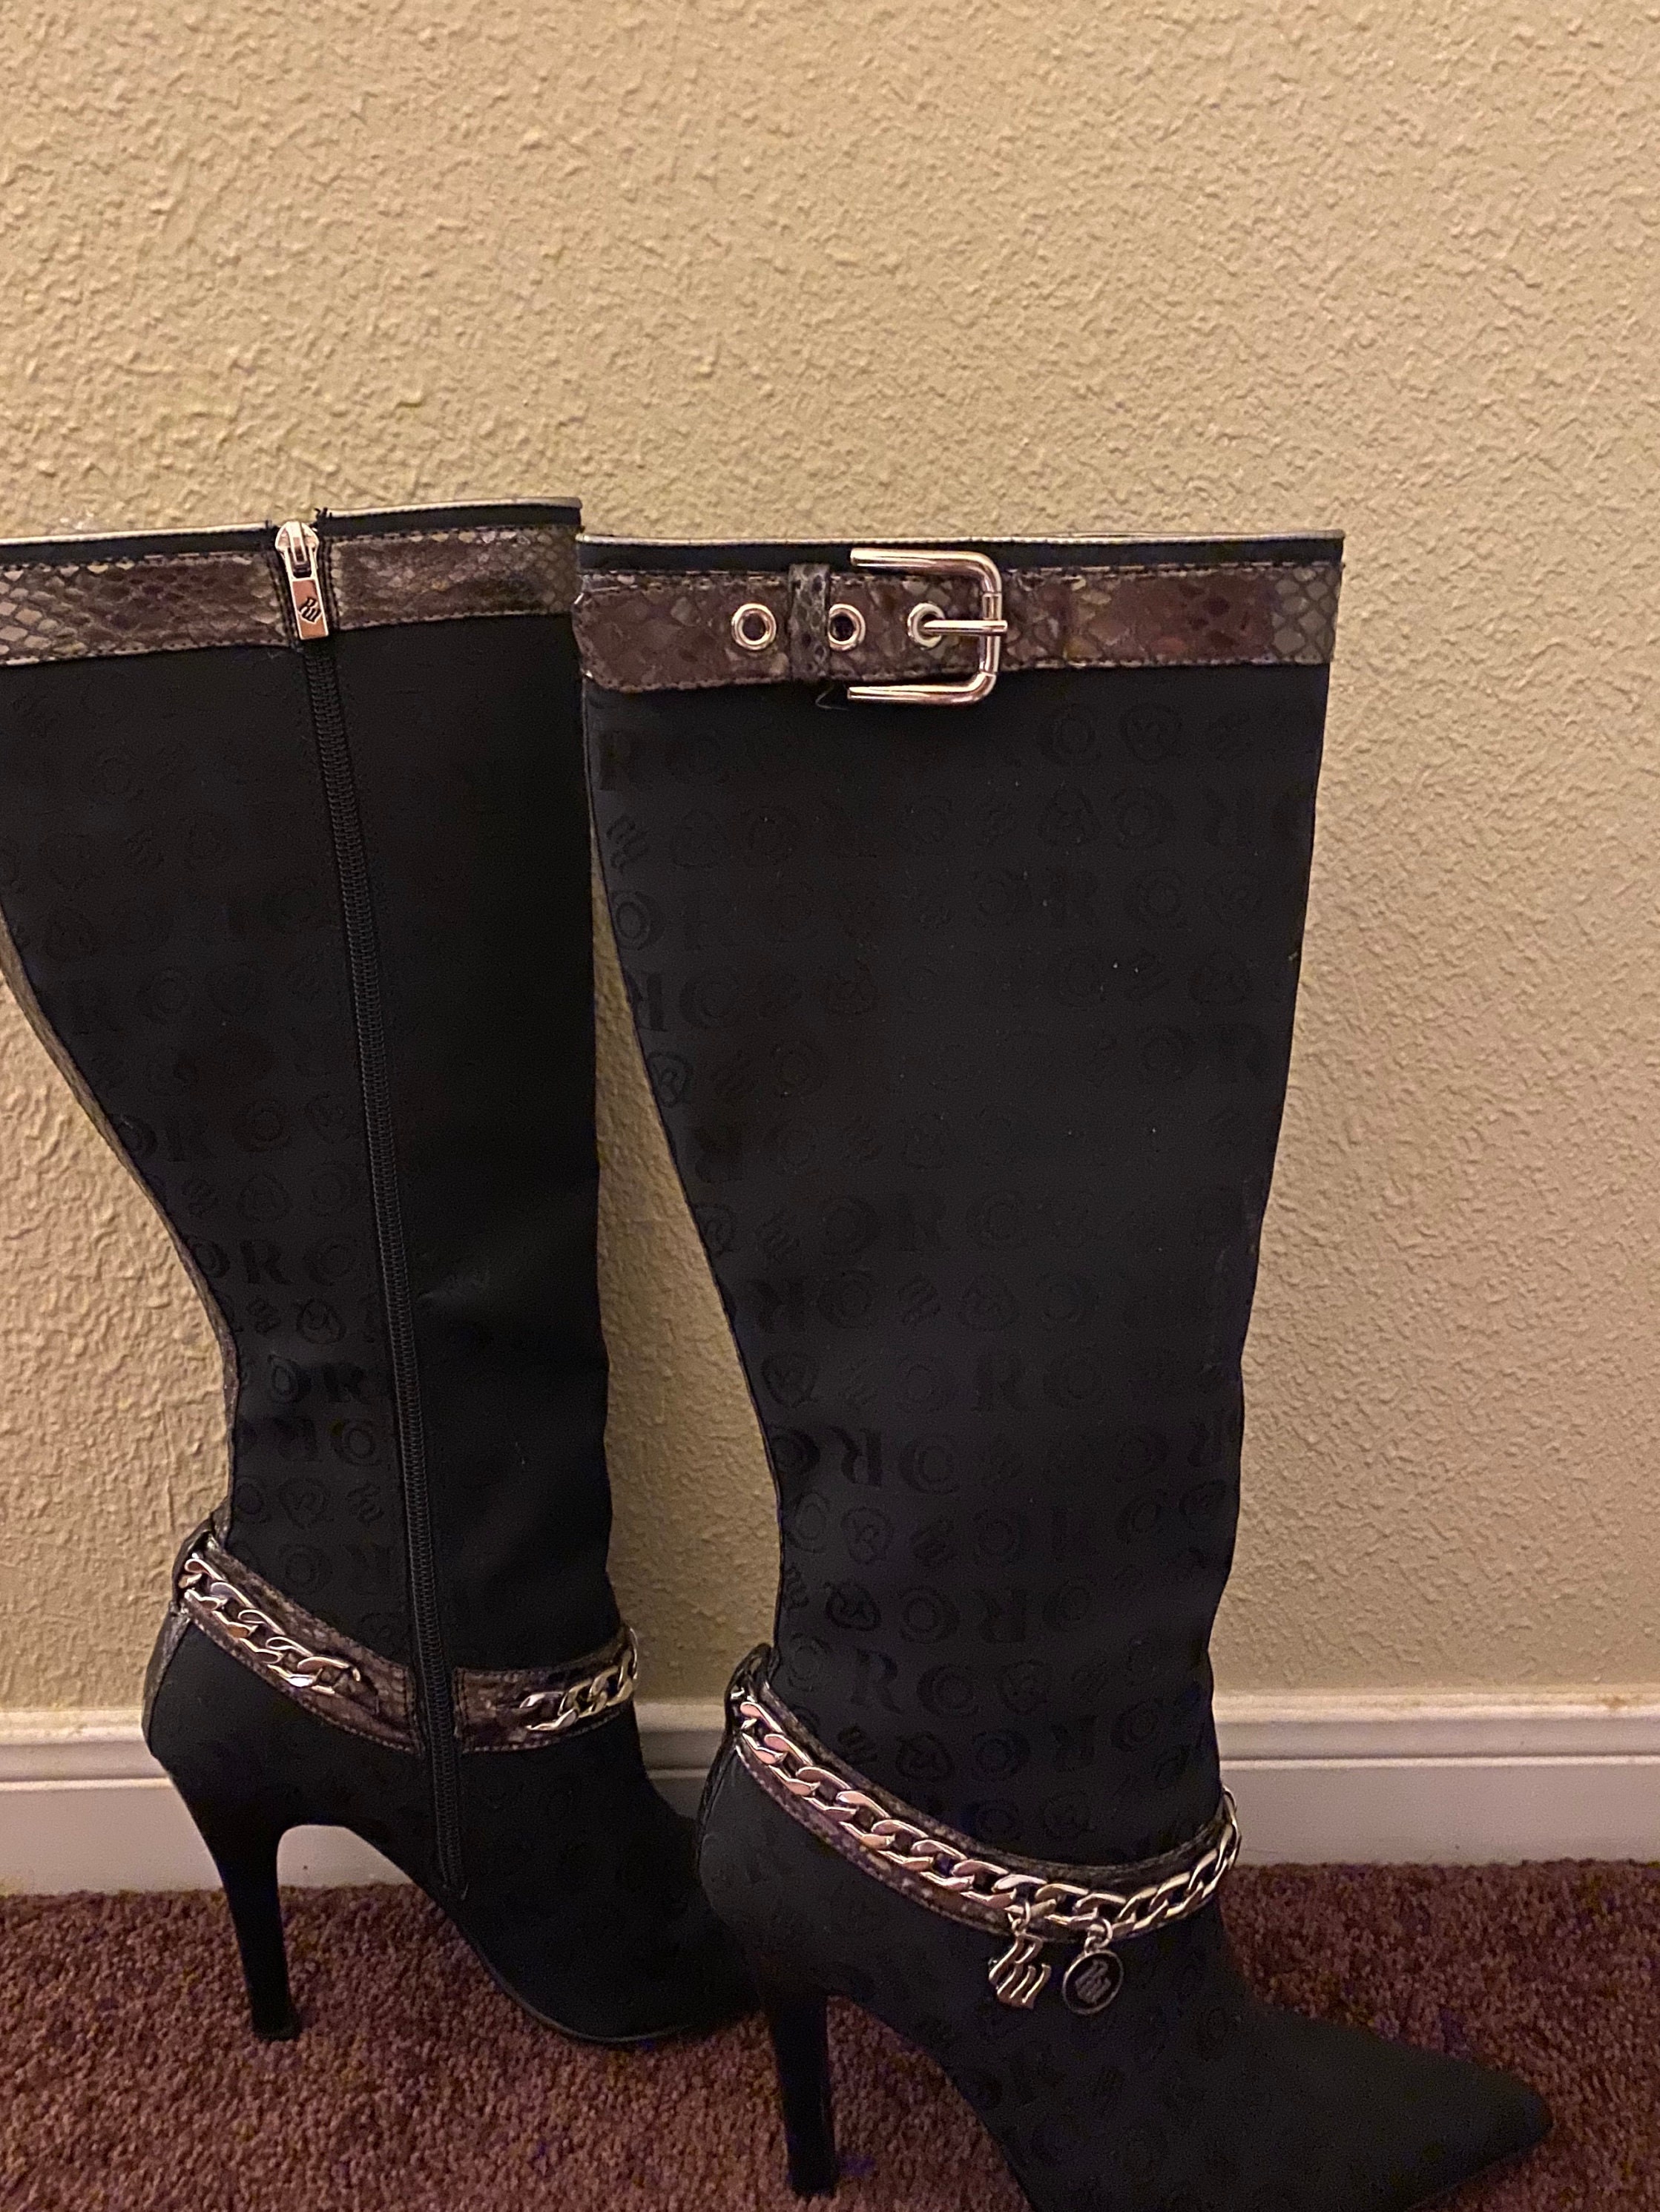 19 LV Lady Boots ideas  boots, louis vuitton shoes, louis vuitton